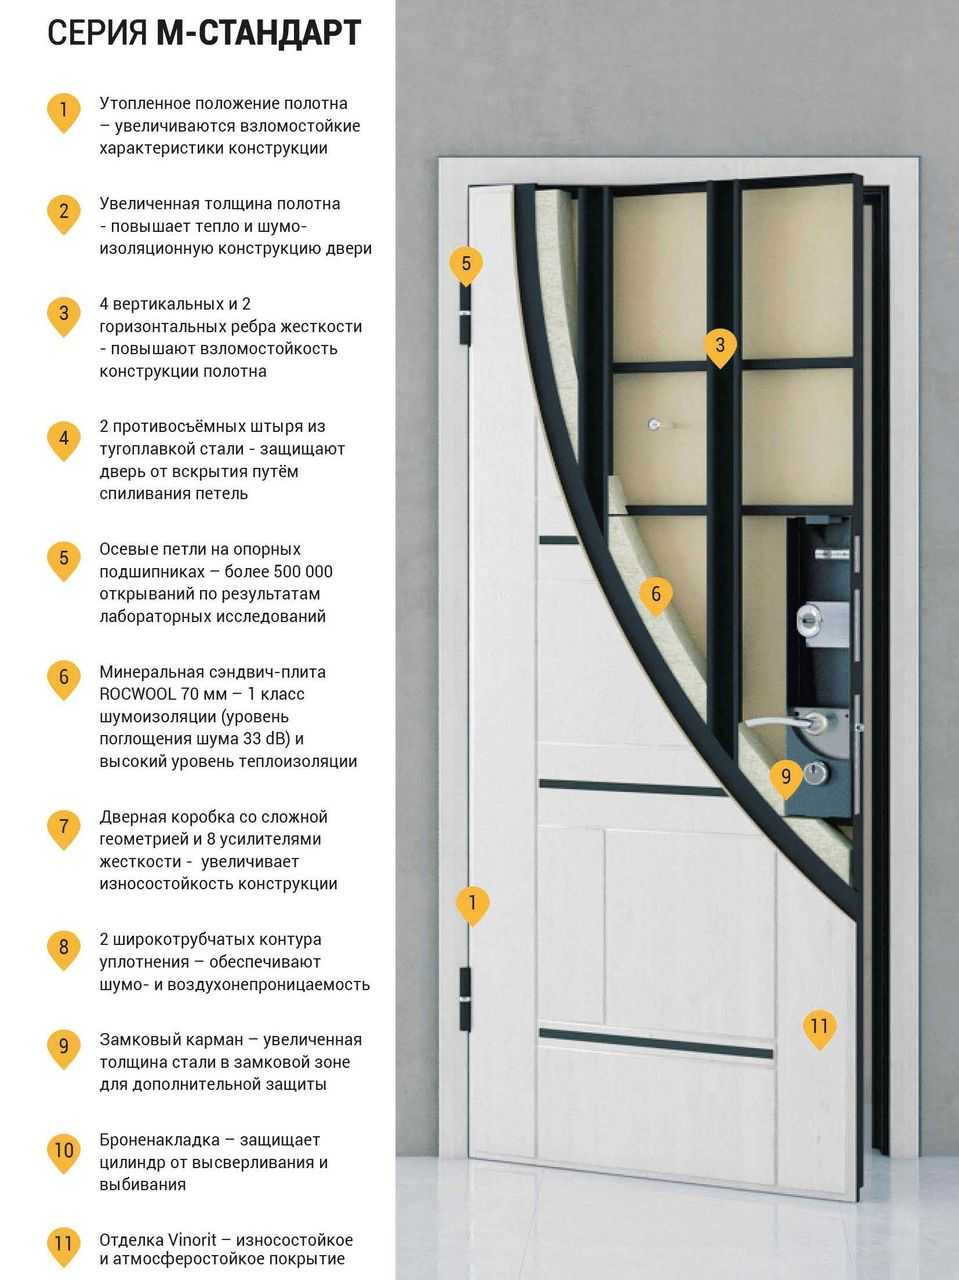 Технические характеристики металлической противопожарной двери согласно требованиям гост: фото